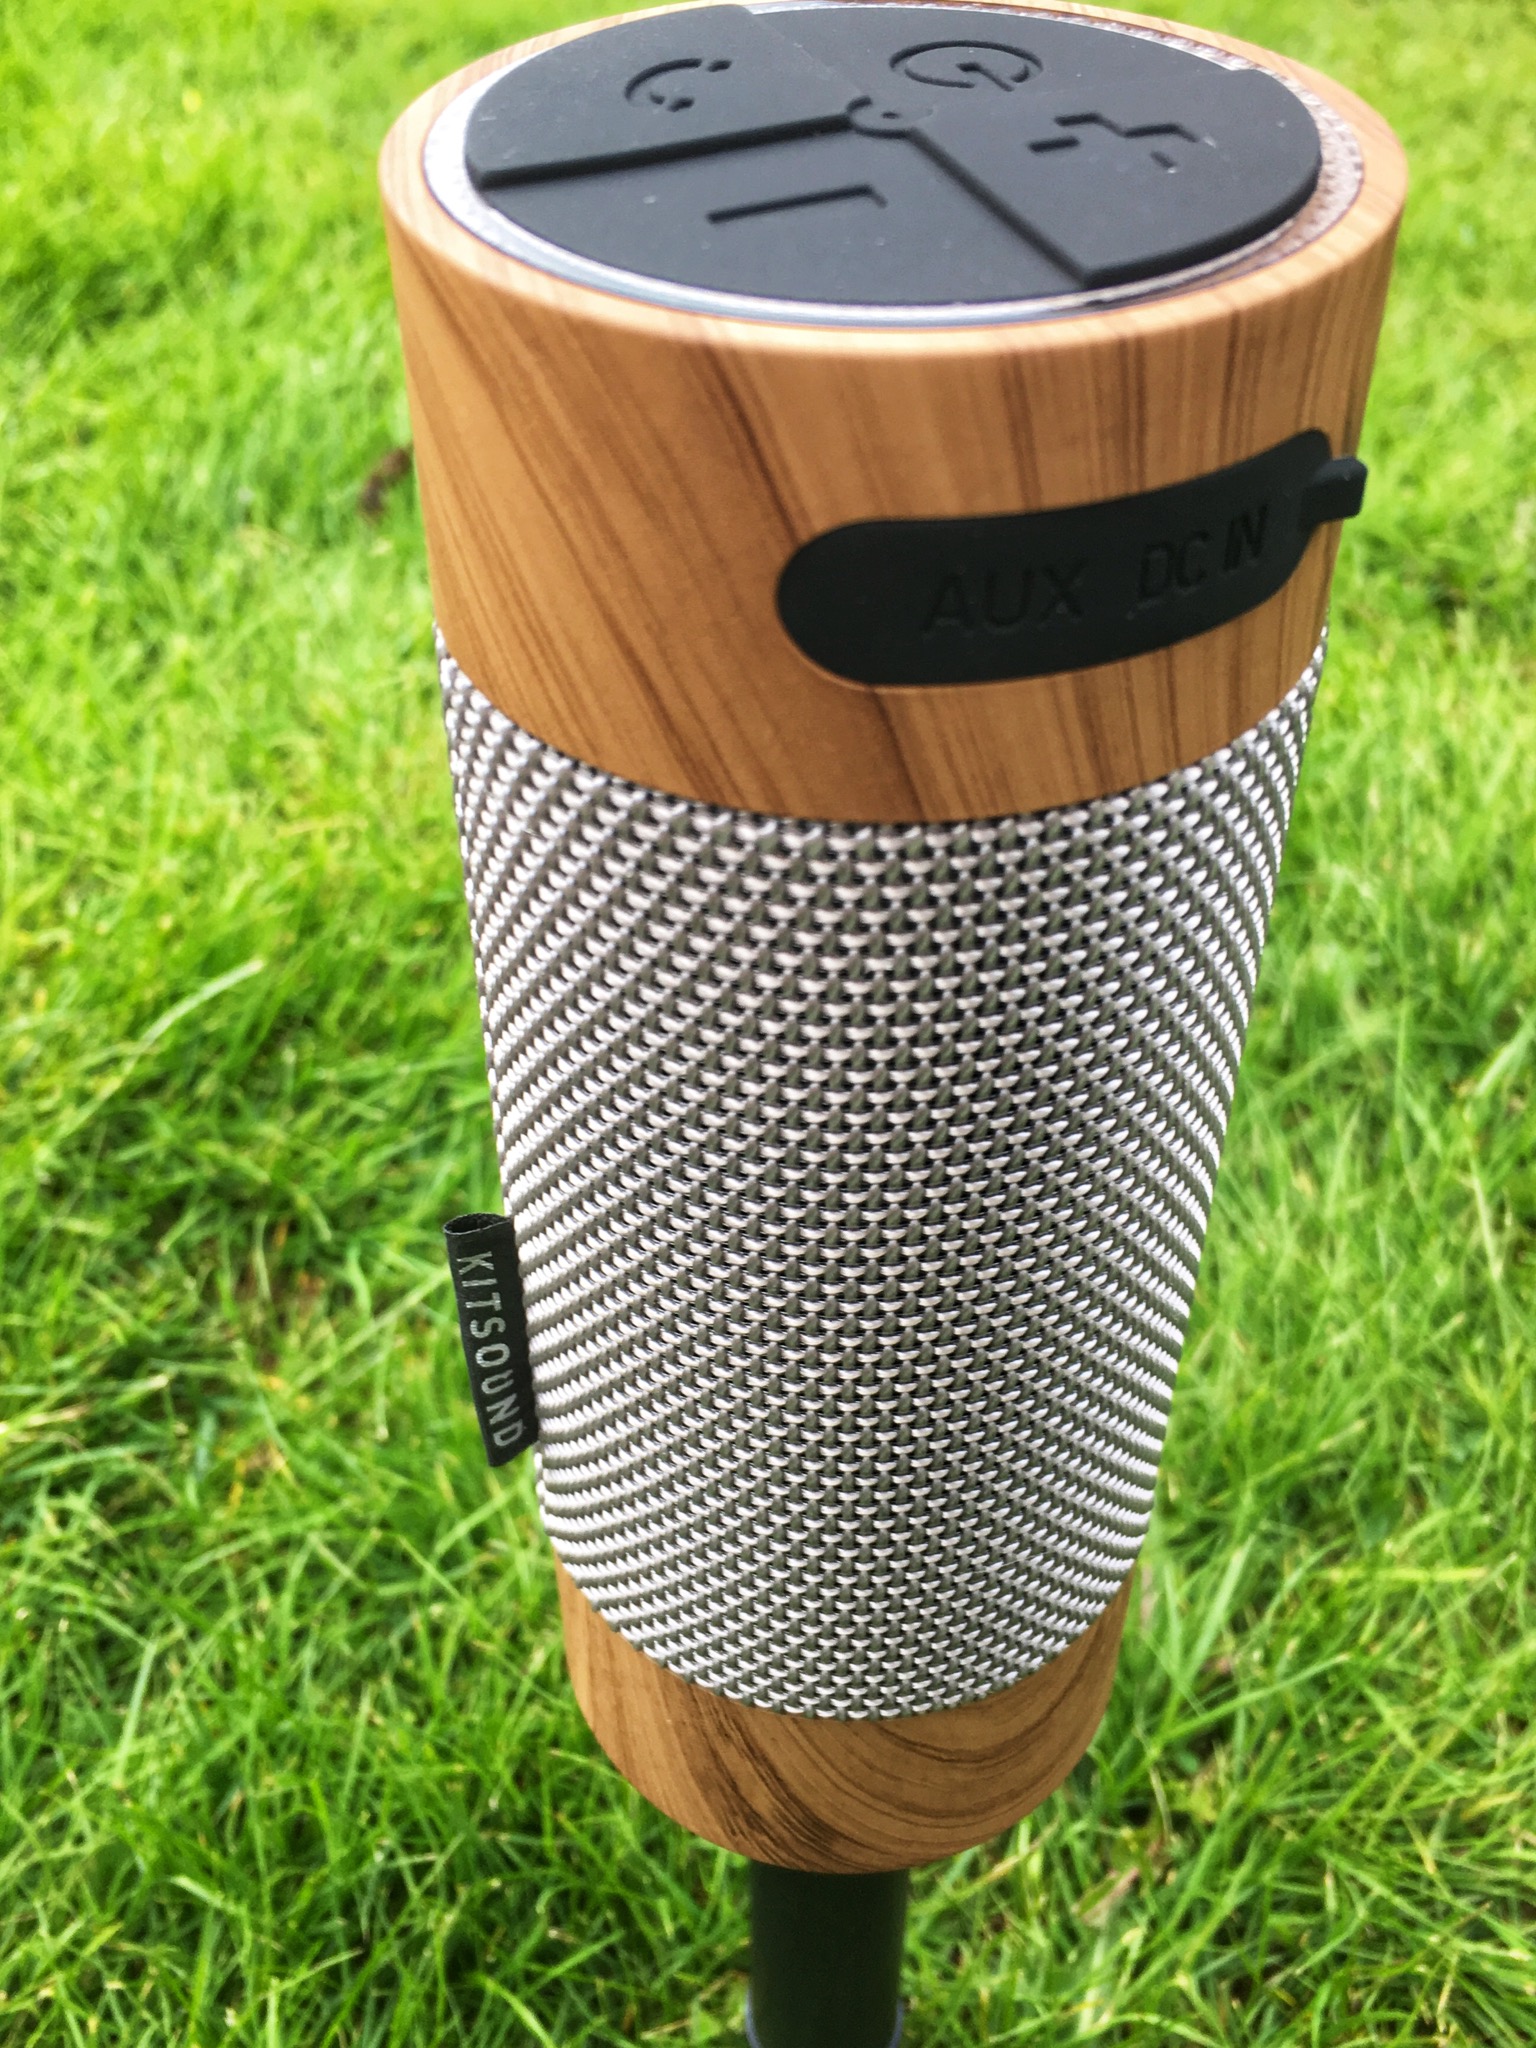 kitsound outdoor speaker